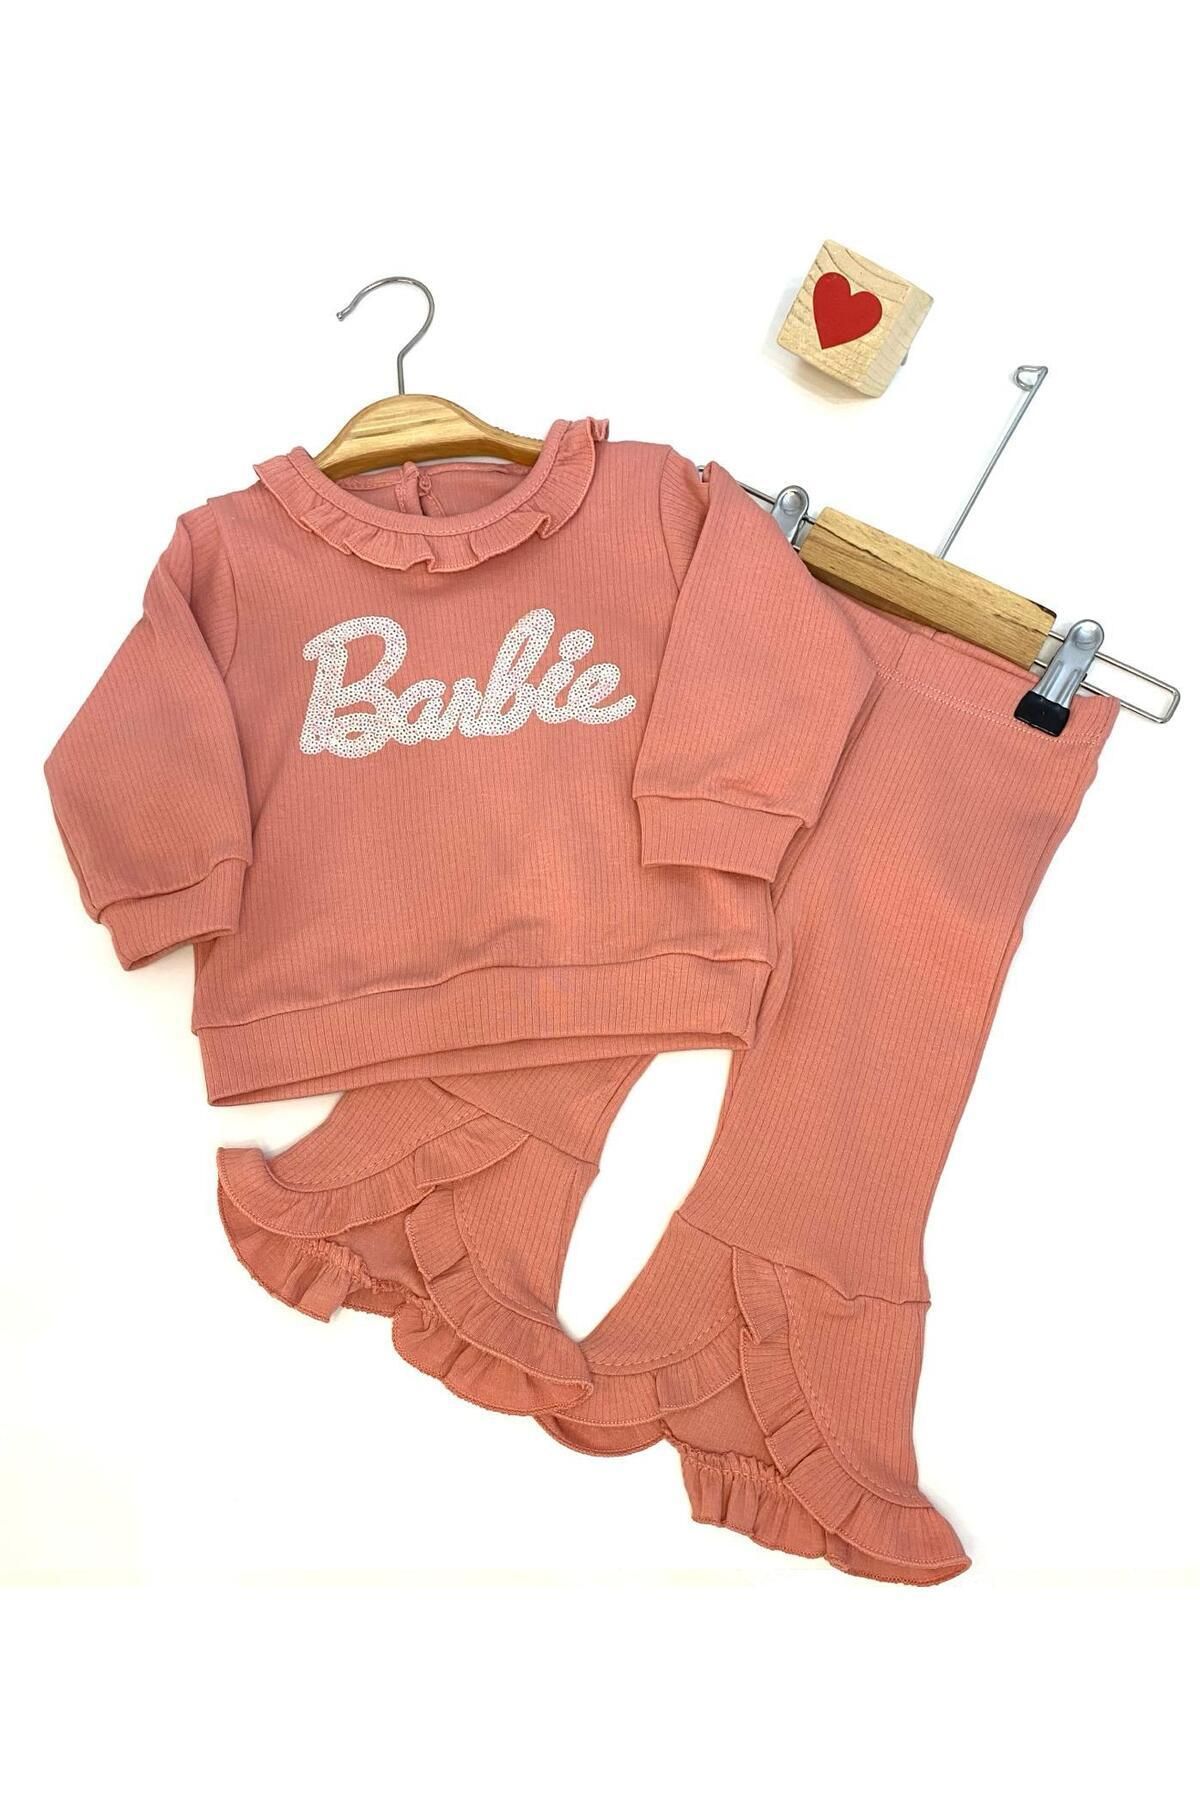 DECO Barbie Pullu Nakışlı Kaşkorse Kız Bebe Takım